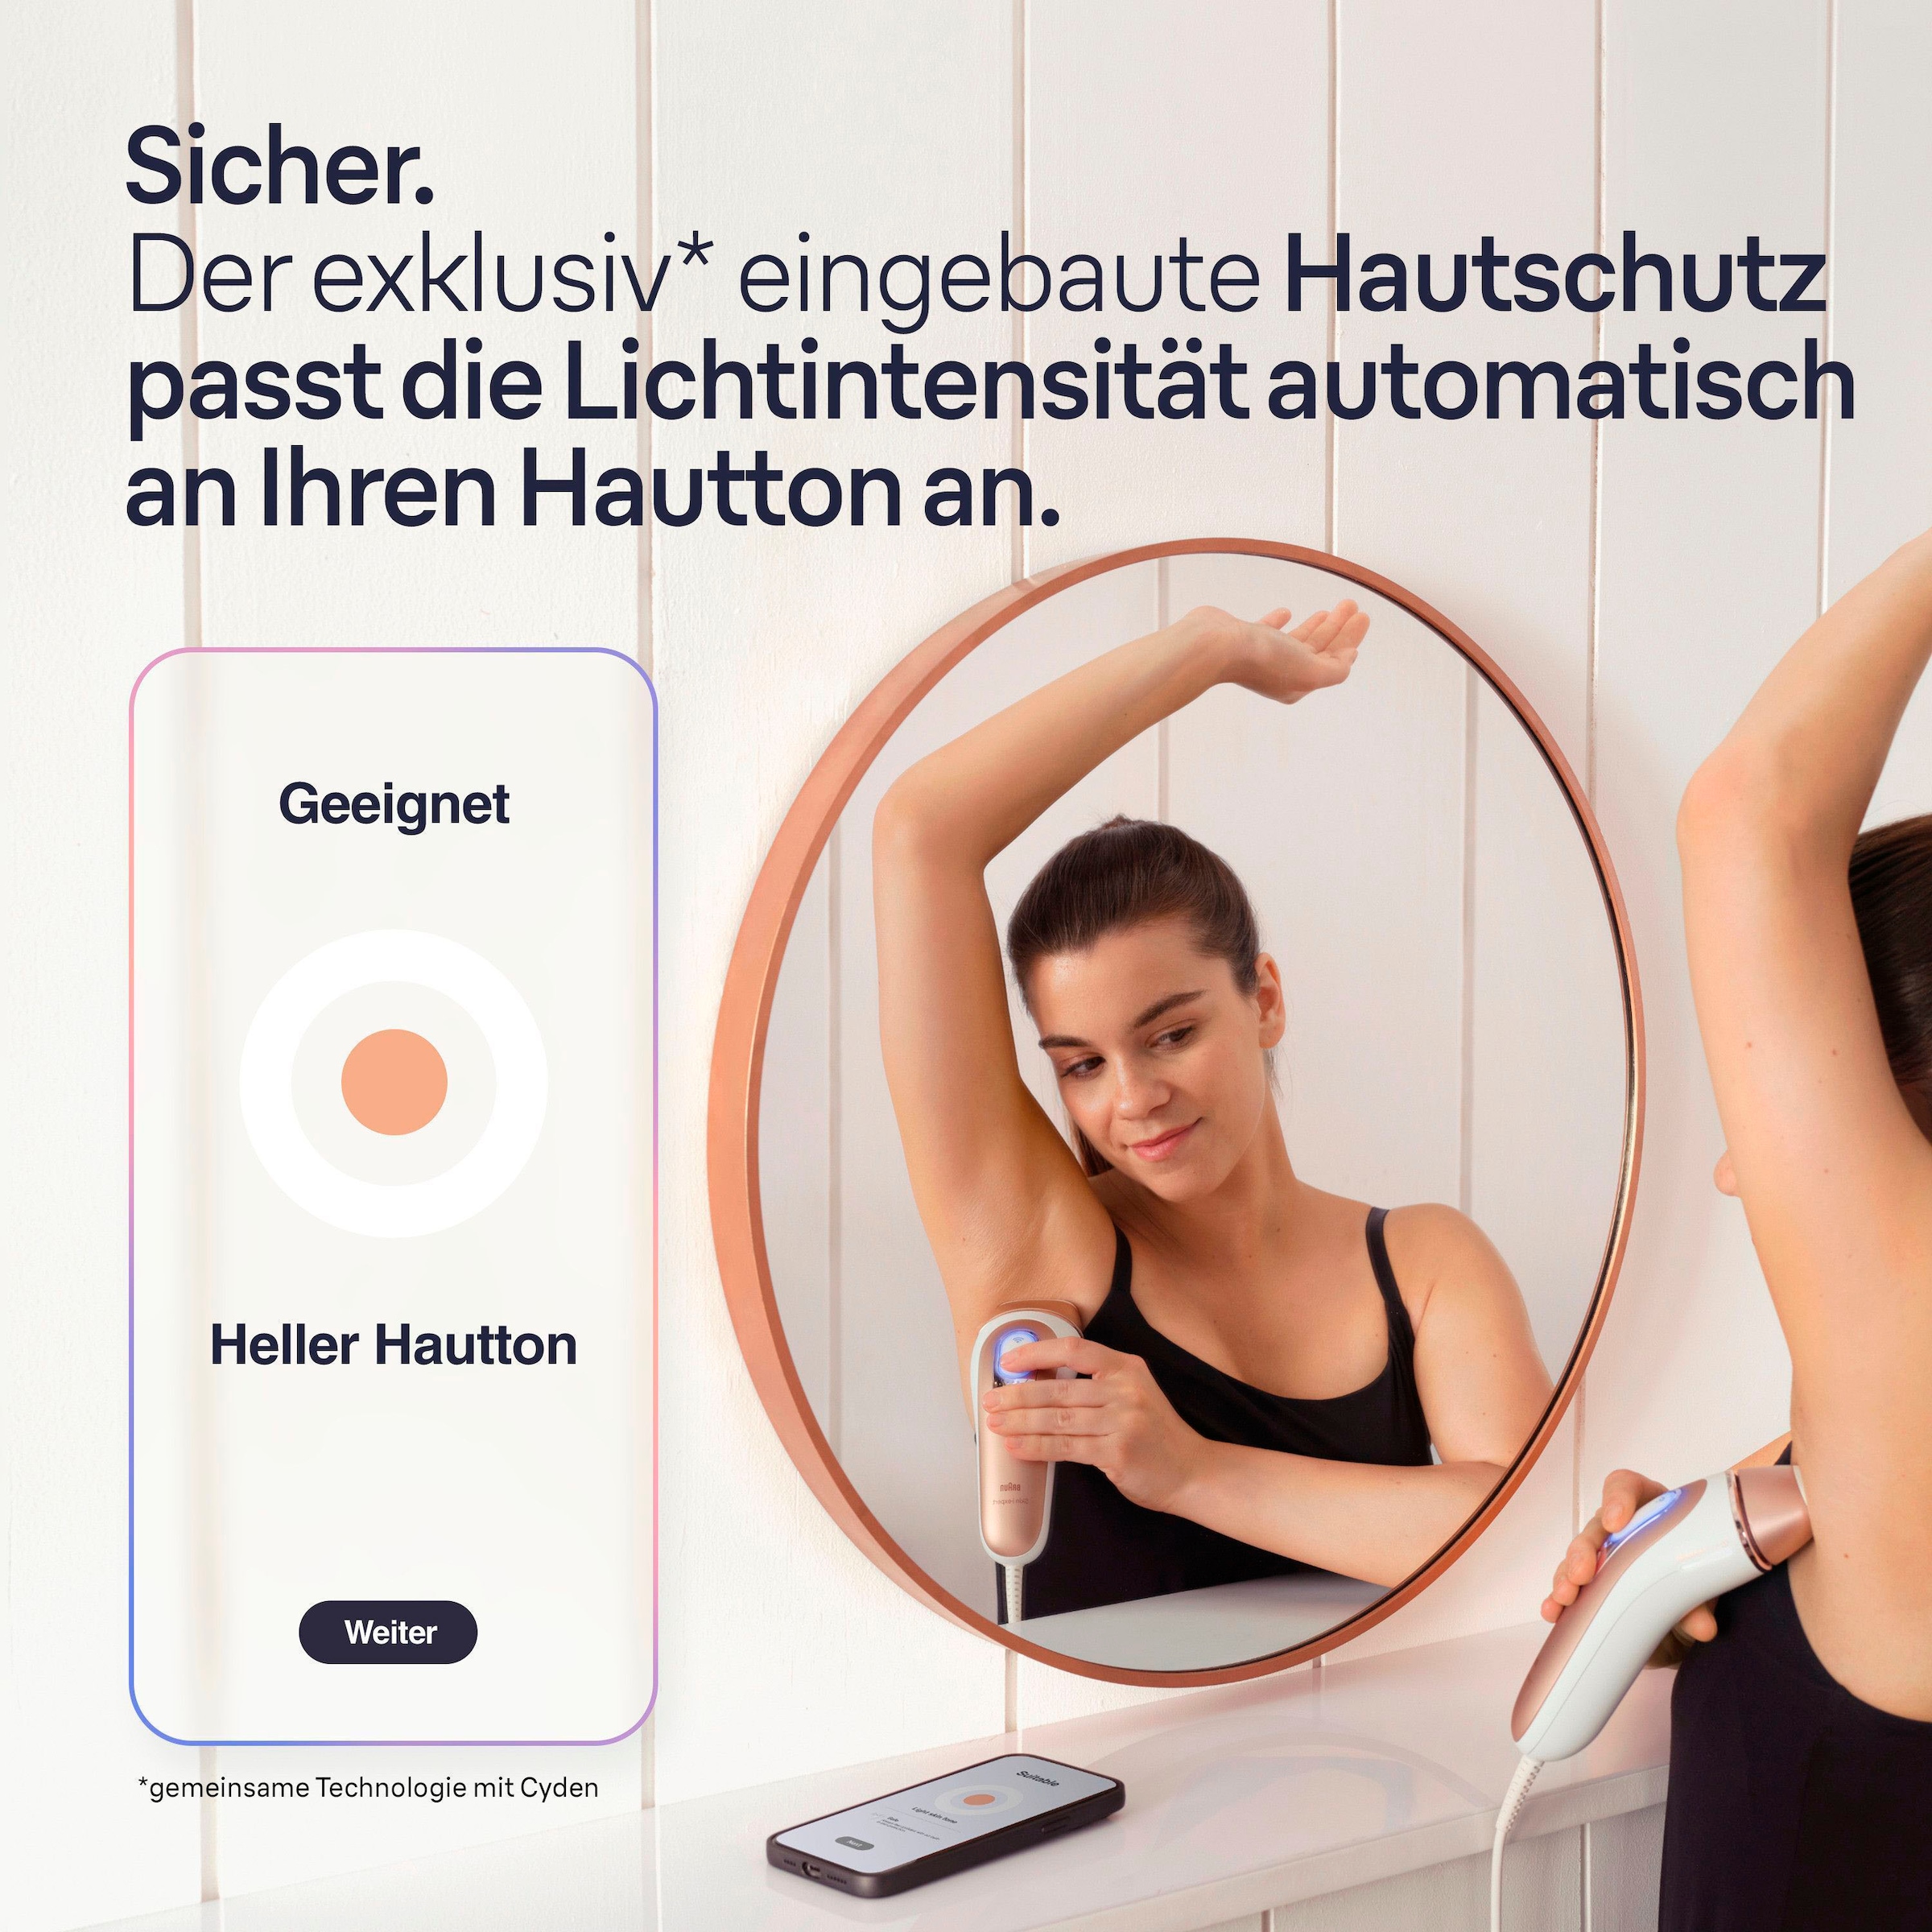 Braun IPL-Haarentferner »Smart Skin i·expert PL7387«, 4 Aufsätze für Gesicht & Körper, Venus Rasierer & Aufbewahrungsbox